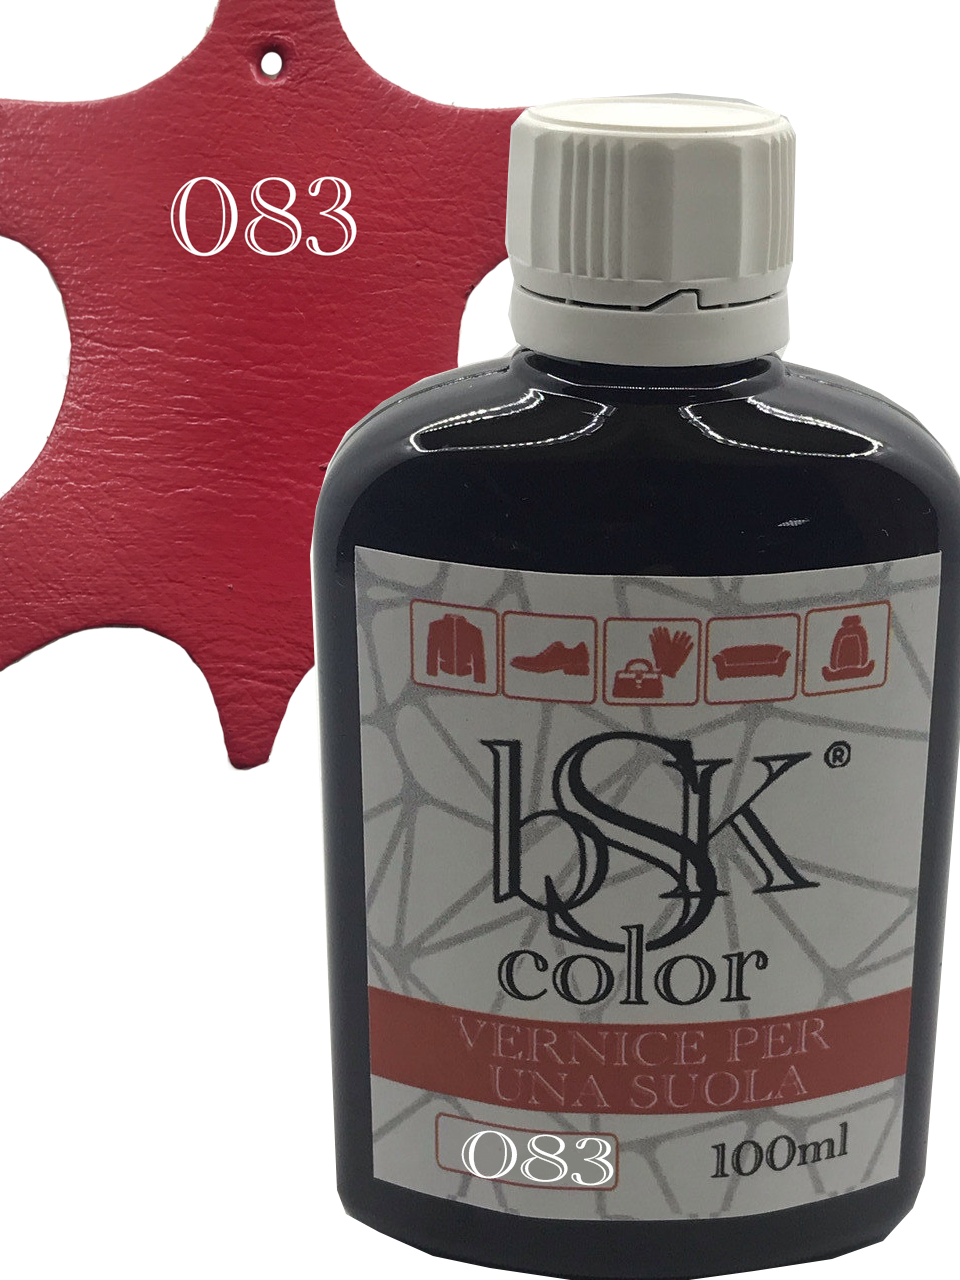 Краска для гладкой кожи “bsk-color” 100ml цвет красная малина: продажа .